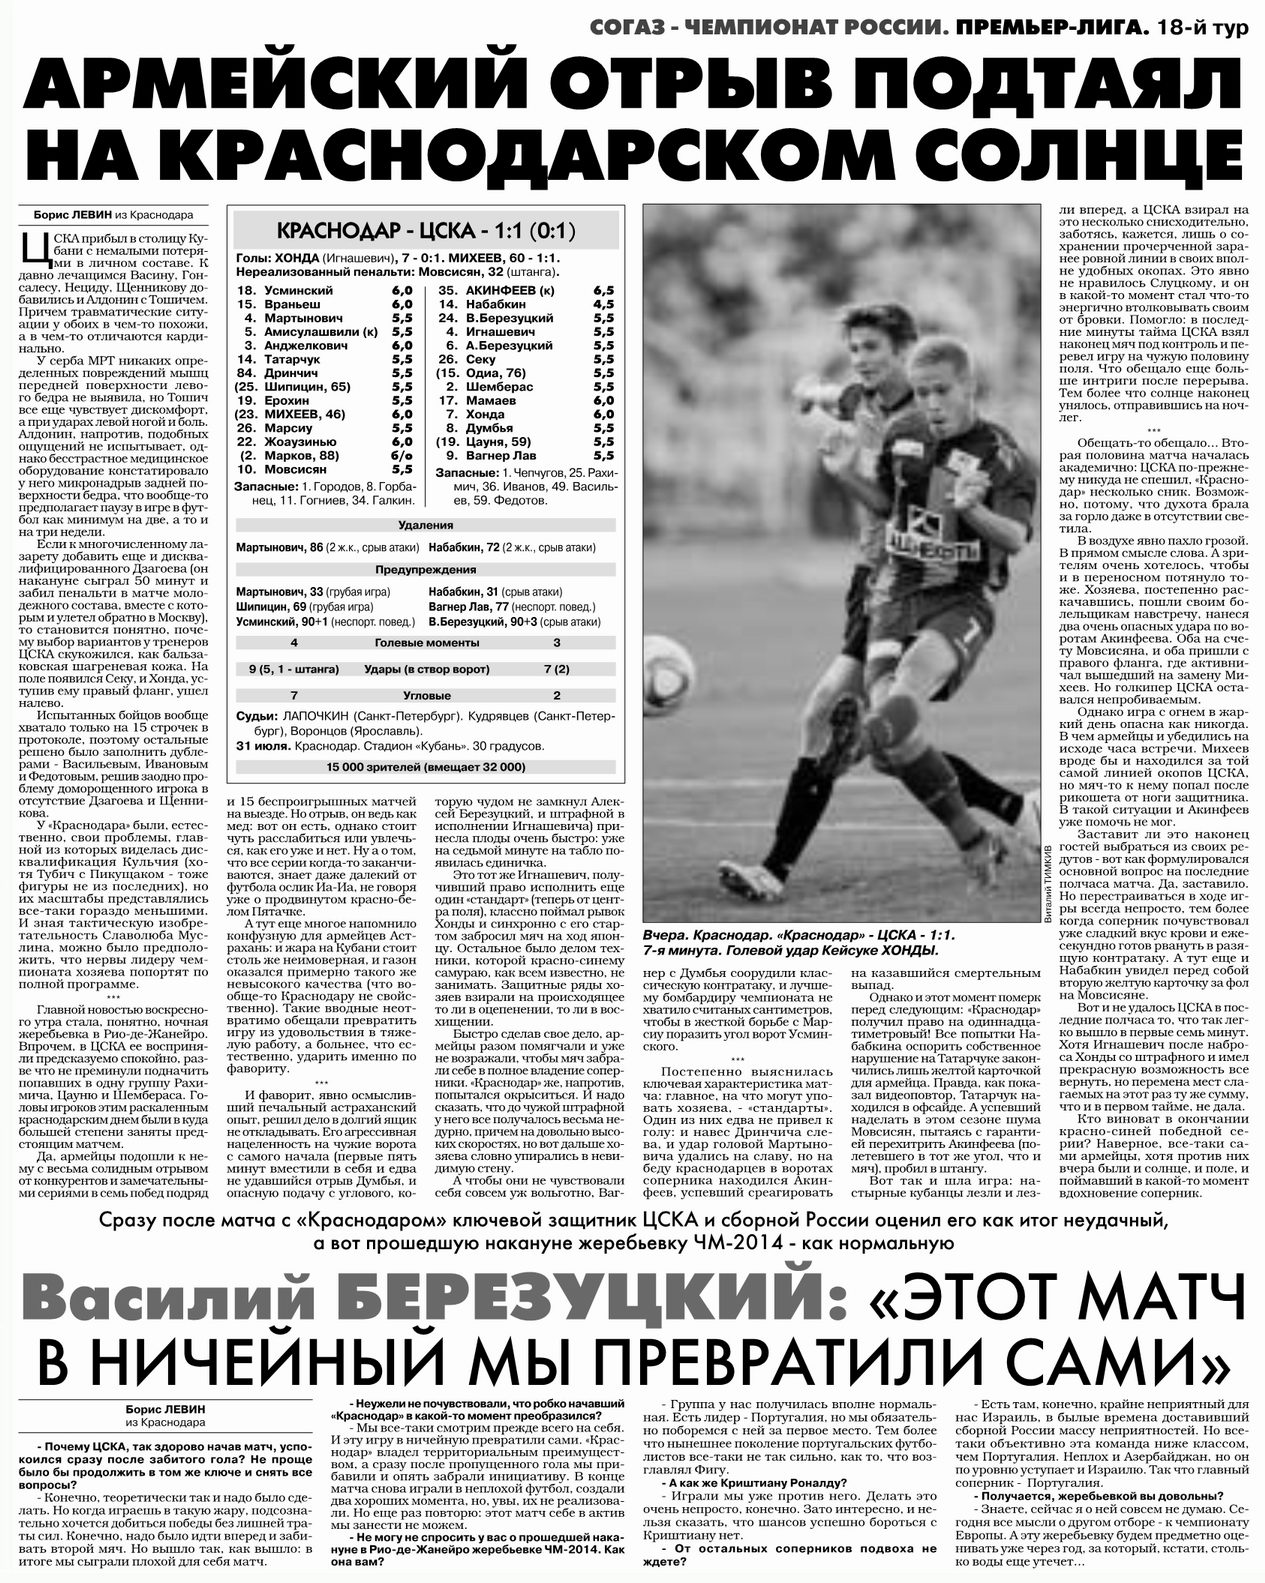 2011-07-31.Krasnodar-CSKA